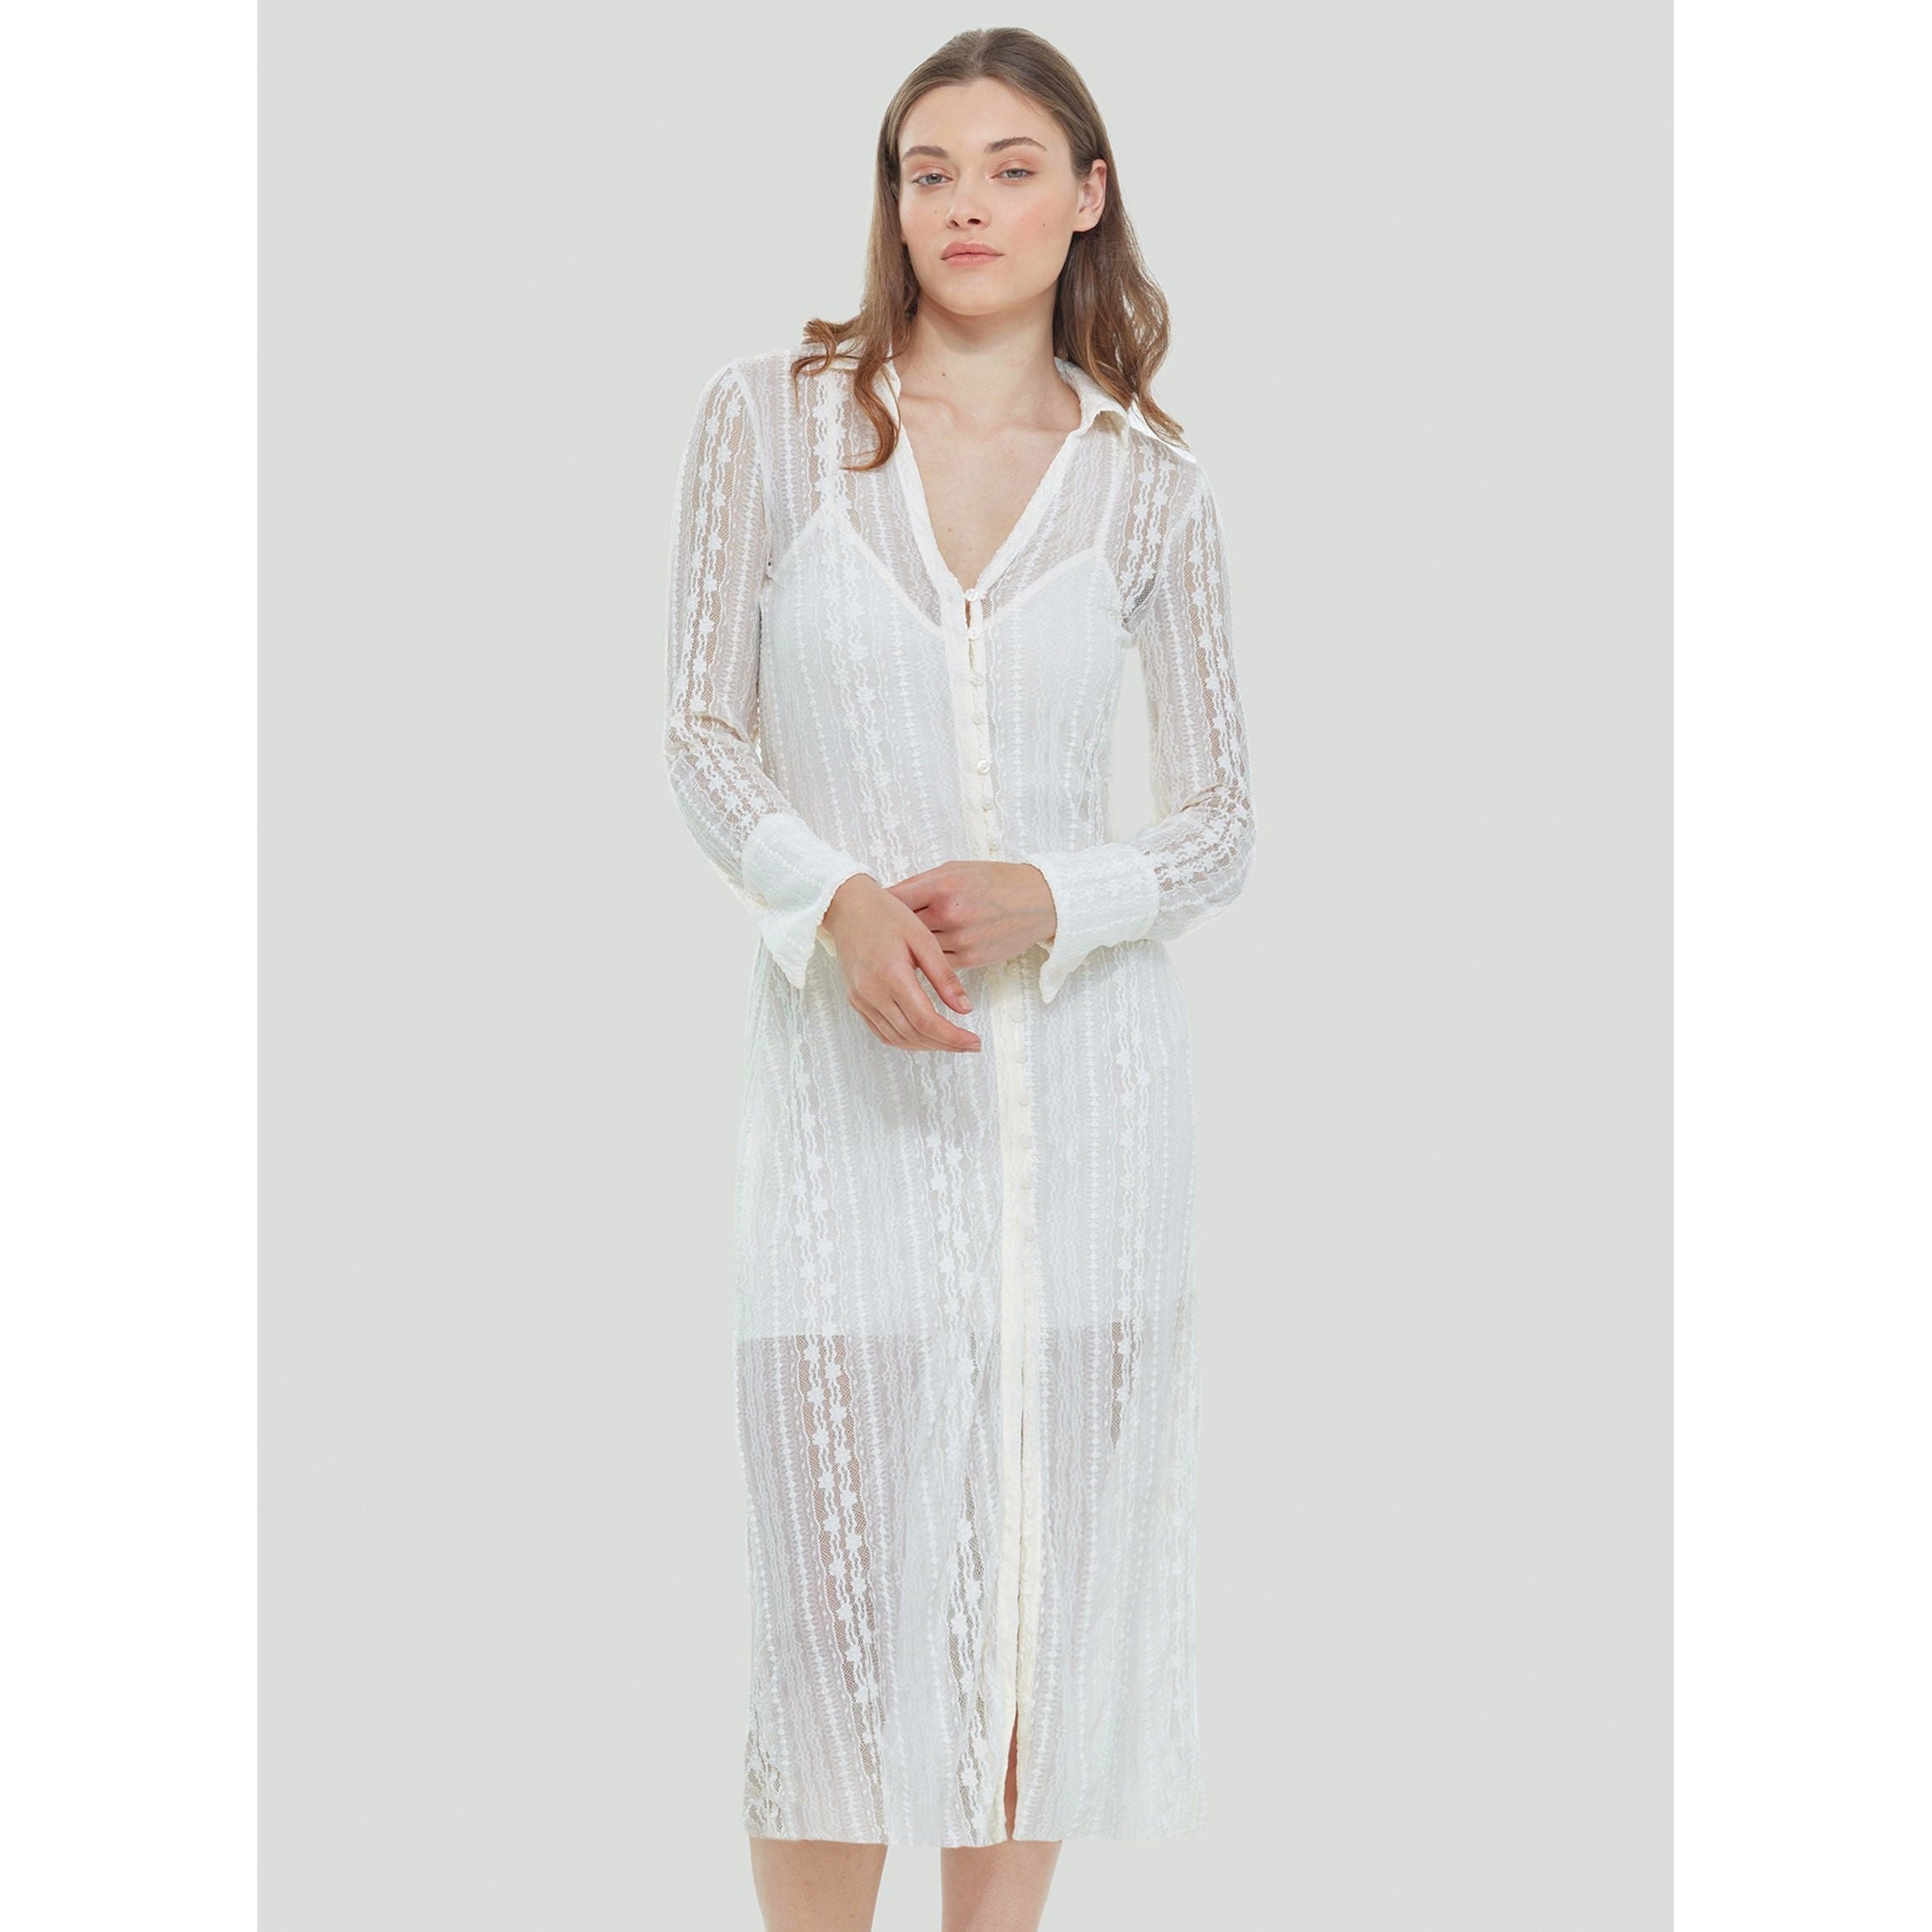 Dex - Collared Lace Midi Dress in White Lace